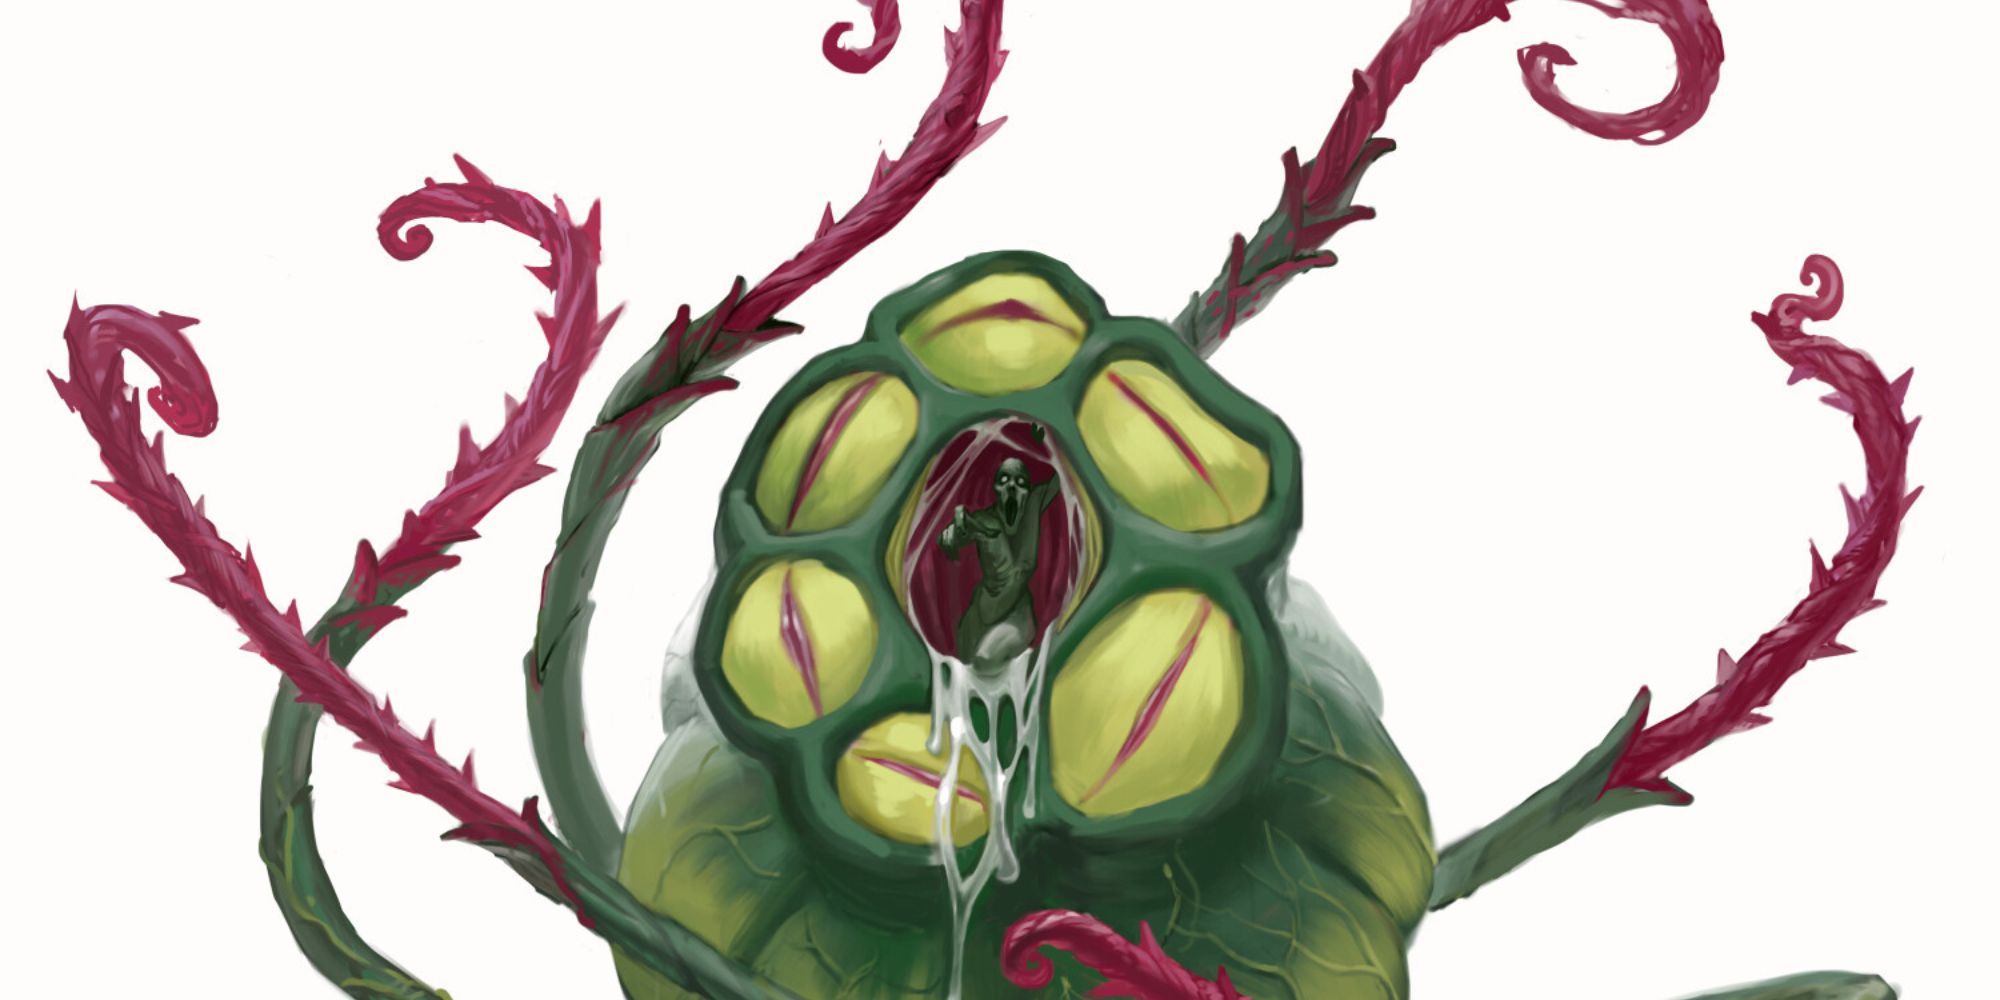 Van Richten's Guide To Ravenloft D&D artwork of the bodytaker plant spawning a podling